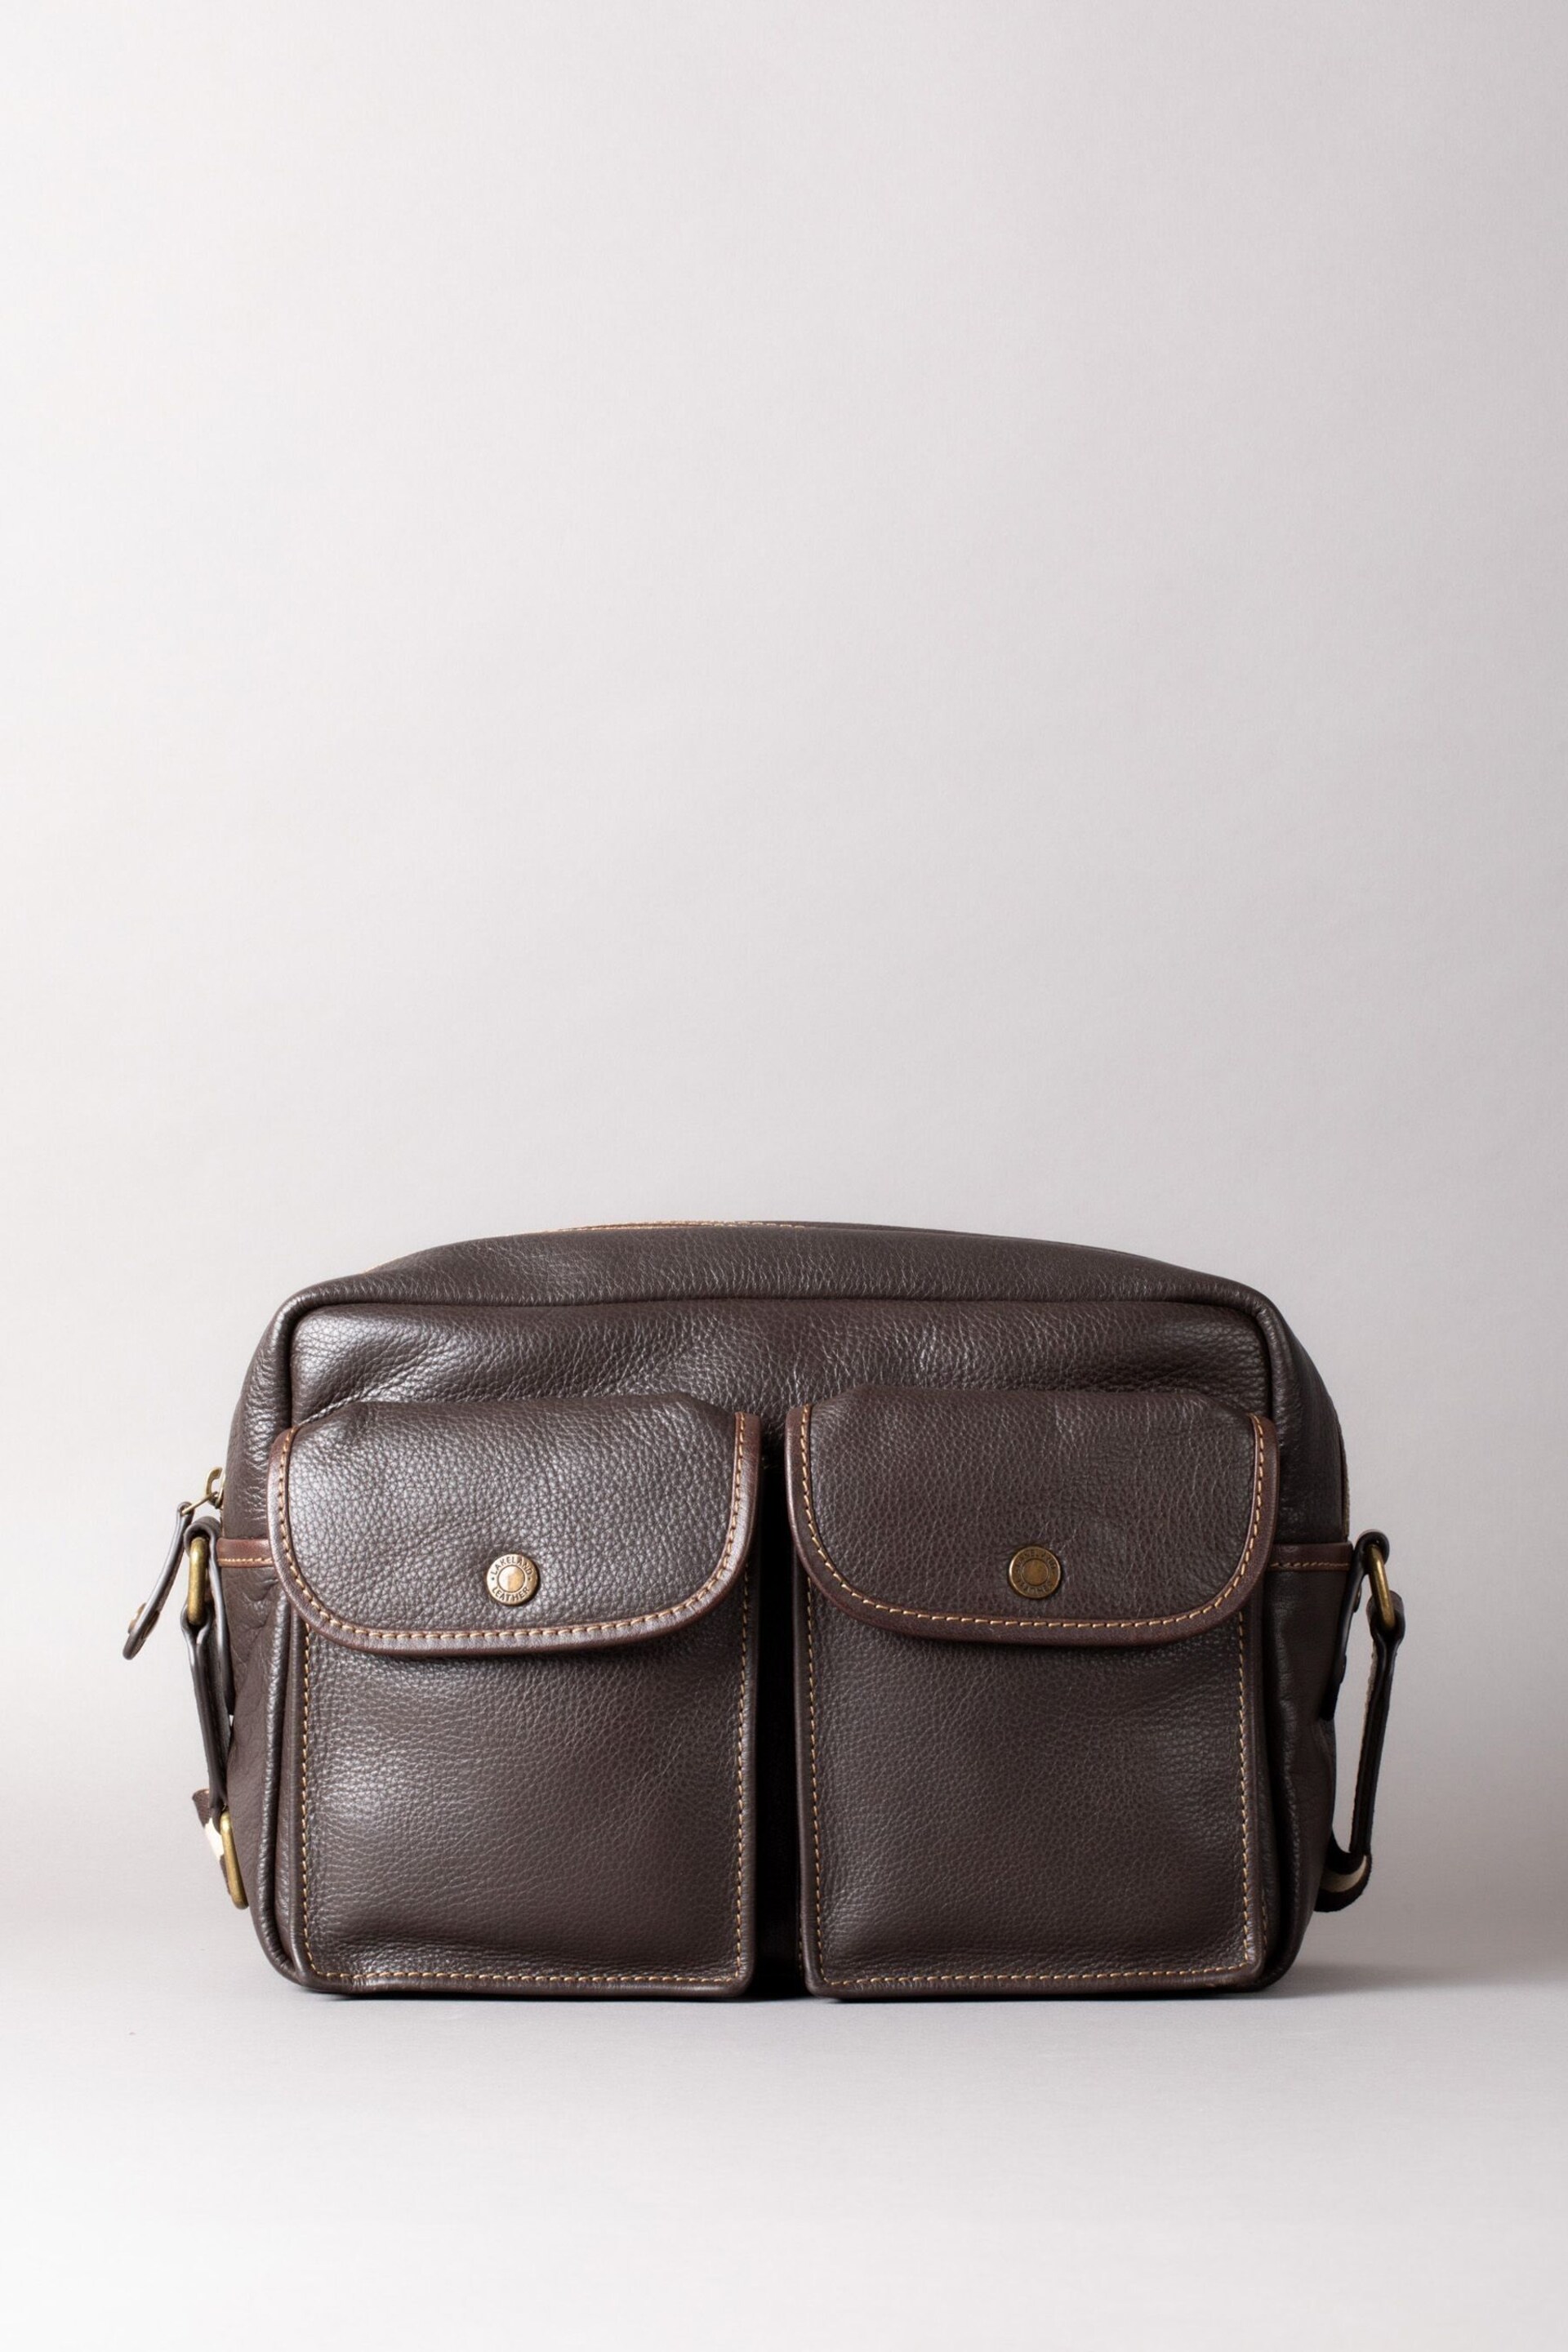 Lakeland Leather Kelsick Leather Messenger Brown Bag - Image 2 of 9